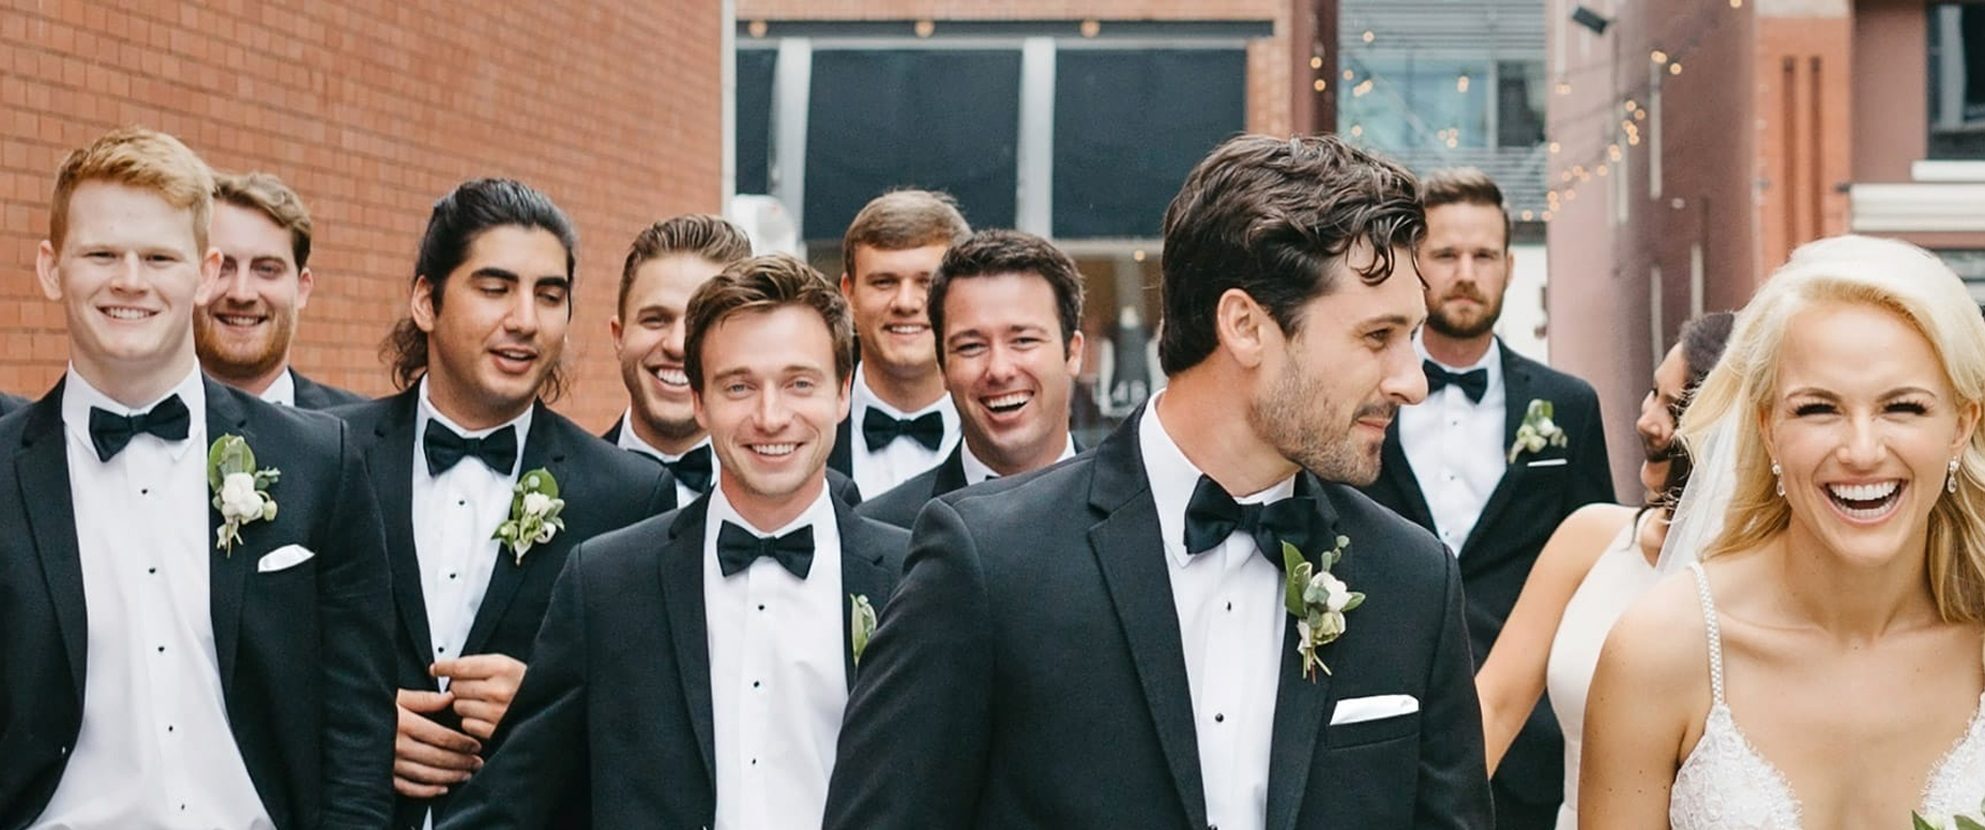 Edward's Men's Wear Formal Wear: Wedding scene, bride and groom with groomsmen.